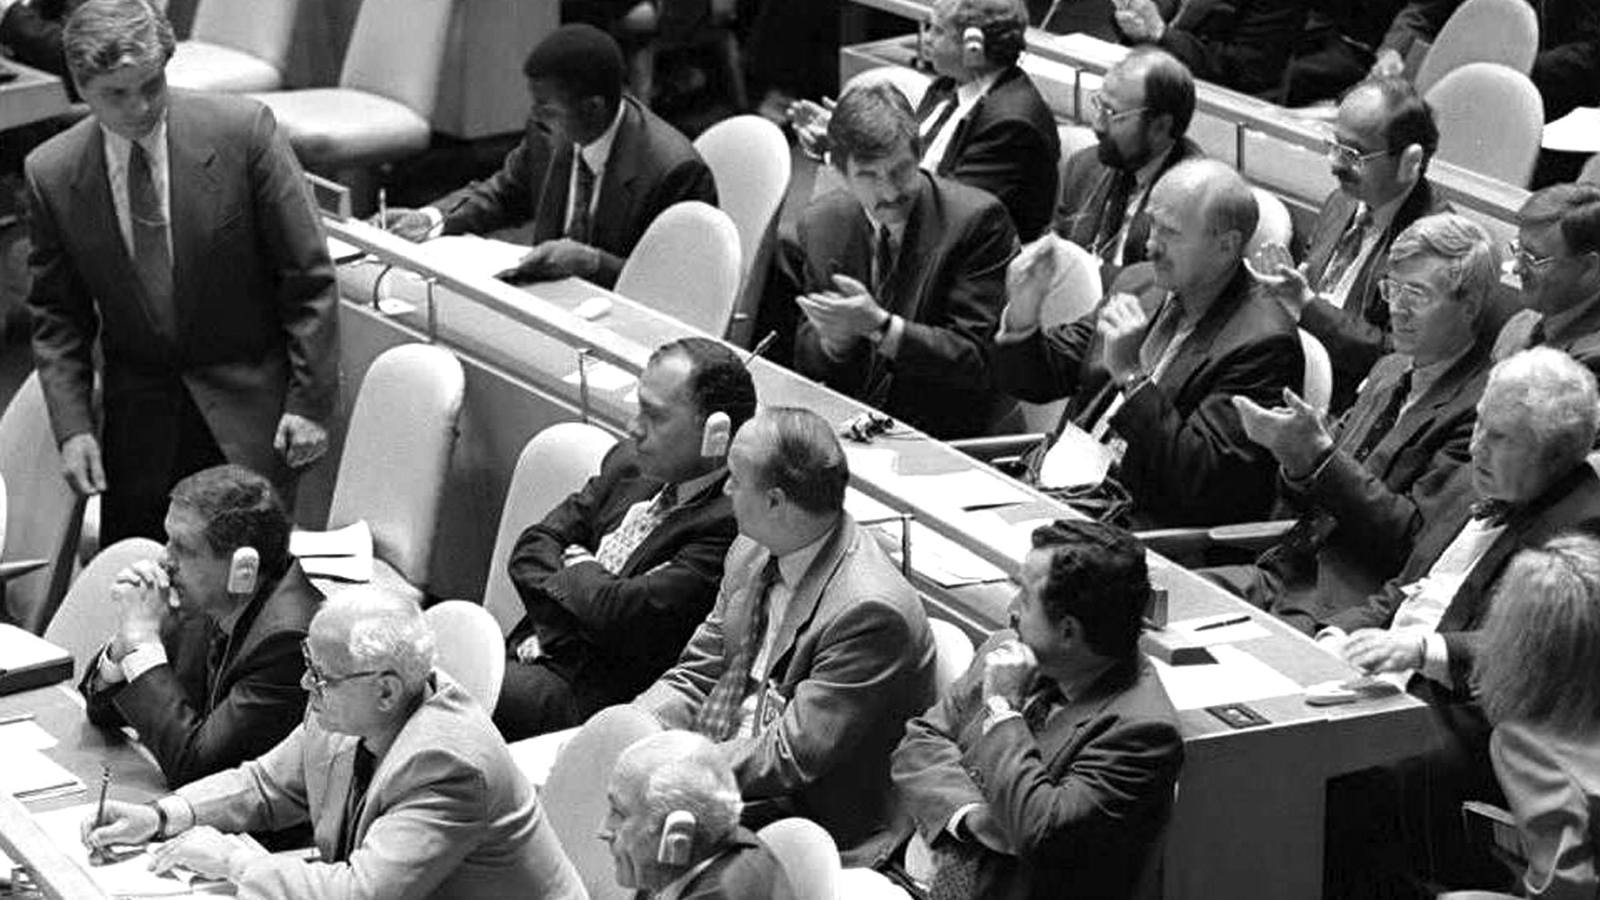 الدول الأطراف تصوت على تمديد معاهدة حظر انتشار الأسلحة النووية إلى أجل غير مسمى في 11 أيار/ مايو 1995 في مقر الأمم المتحدة في نيويورك.